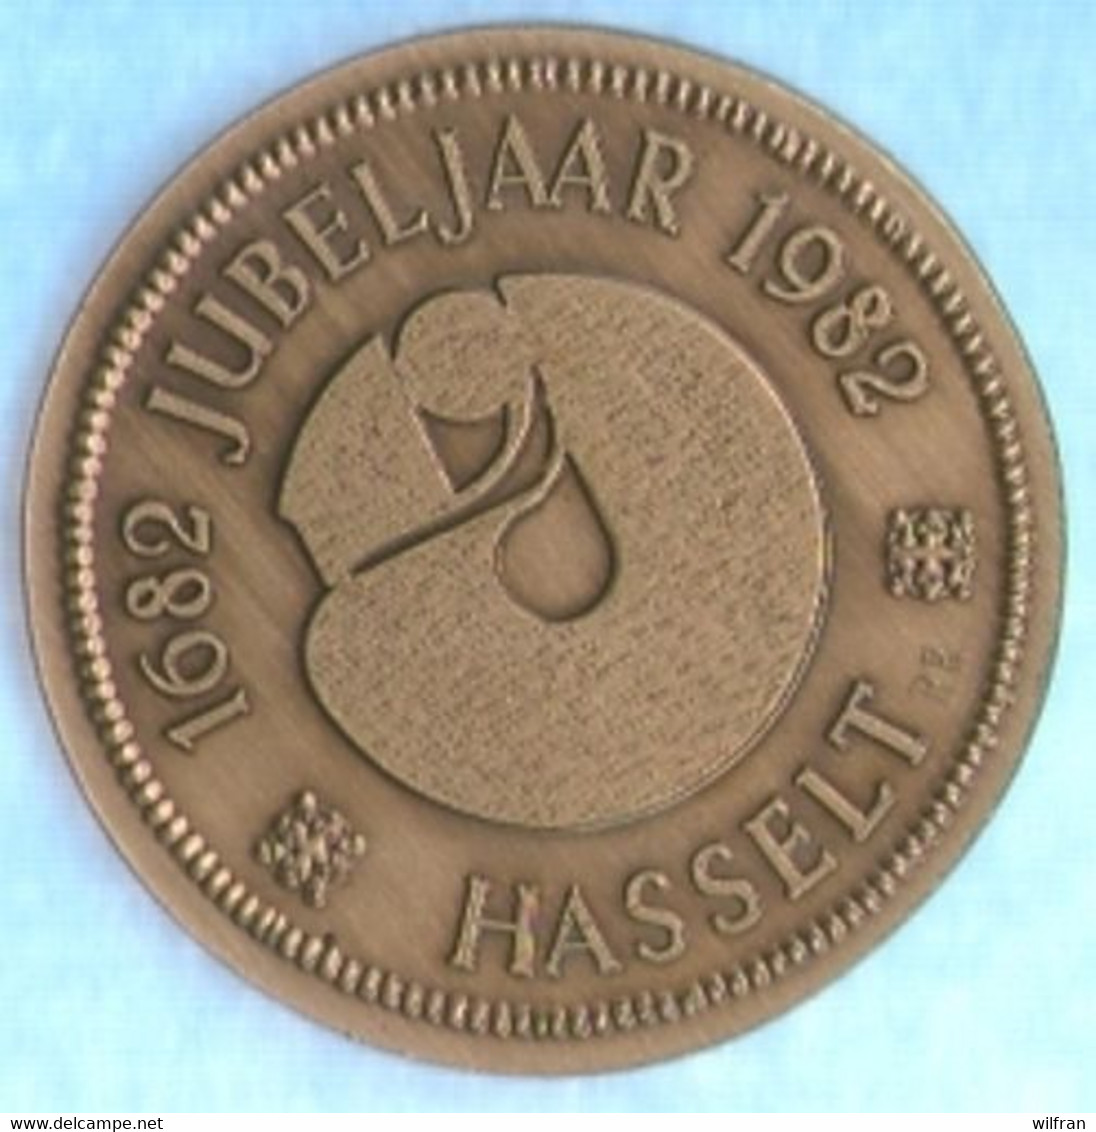 4133 Vz Virga Jesse - Kz 1682 Jubeljaar 1982 Hasselt - Gemeindemünzmarken